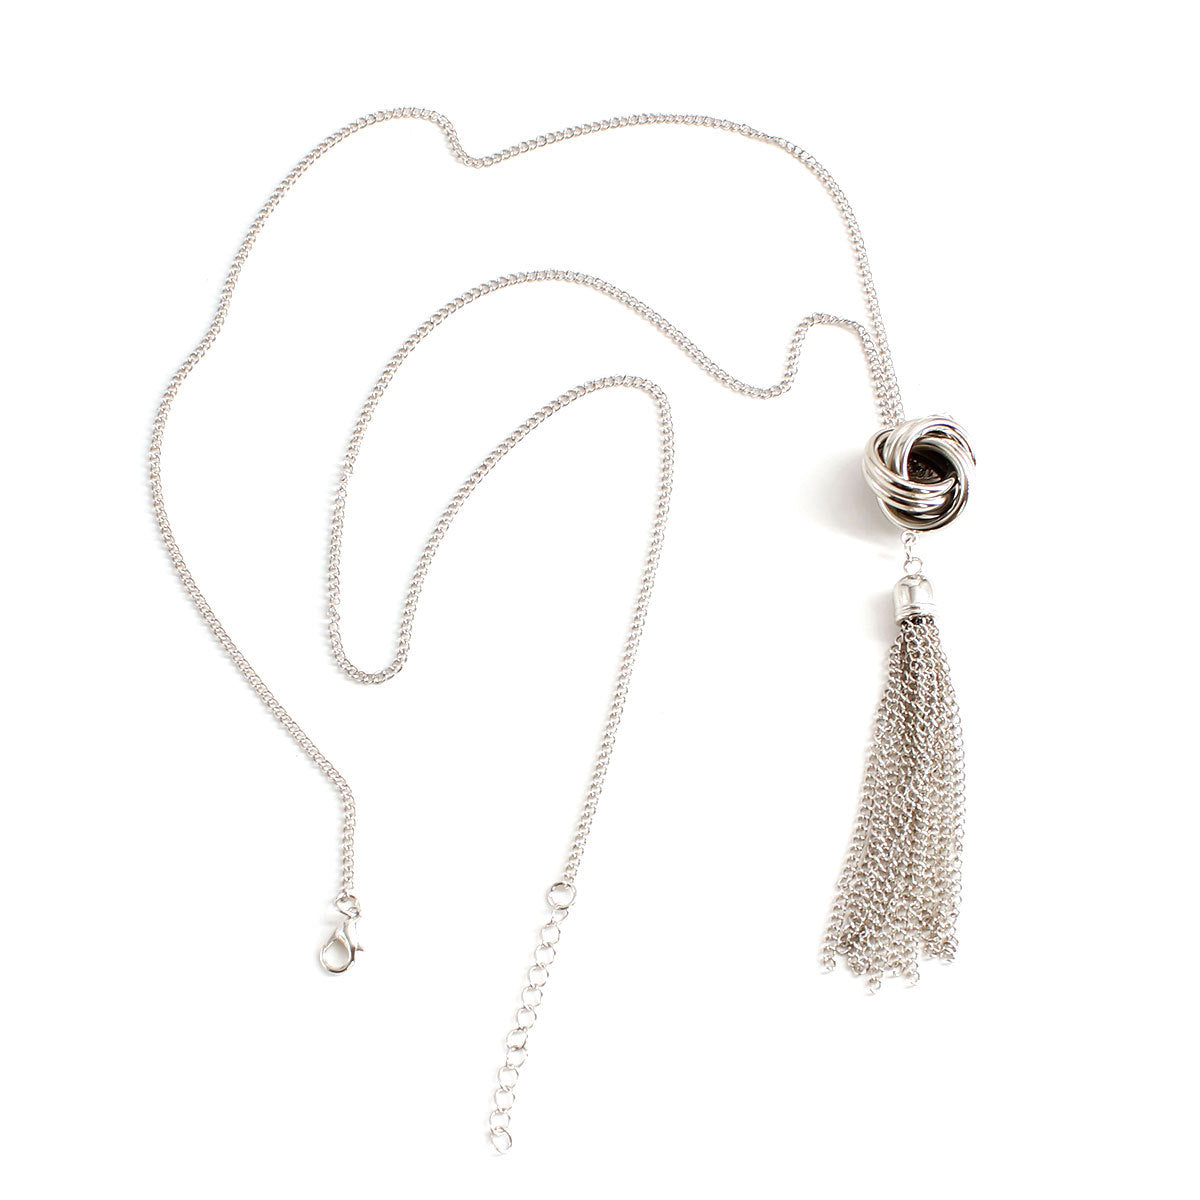 Accessories New Chain Tassel Necklace Women